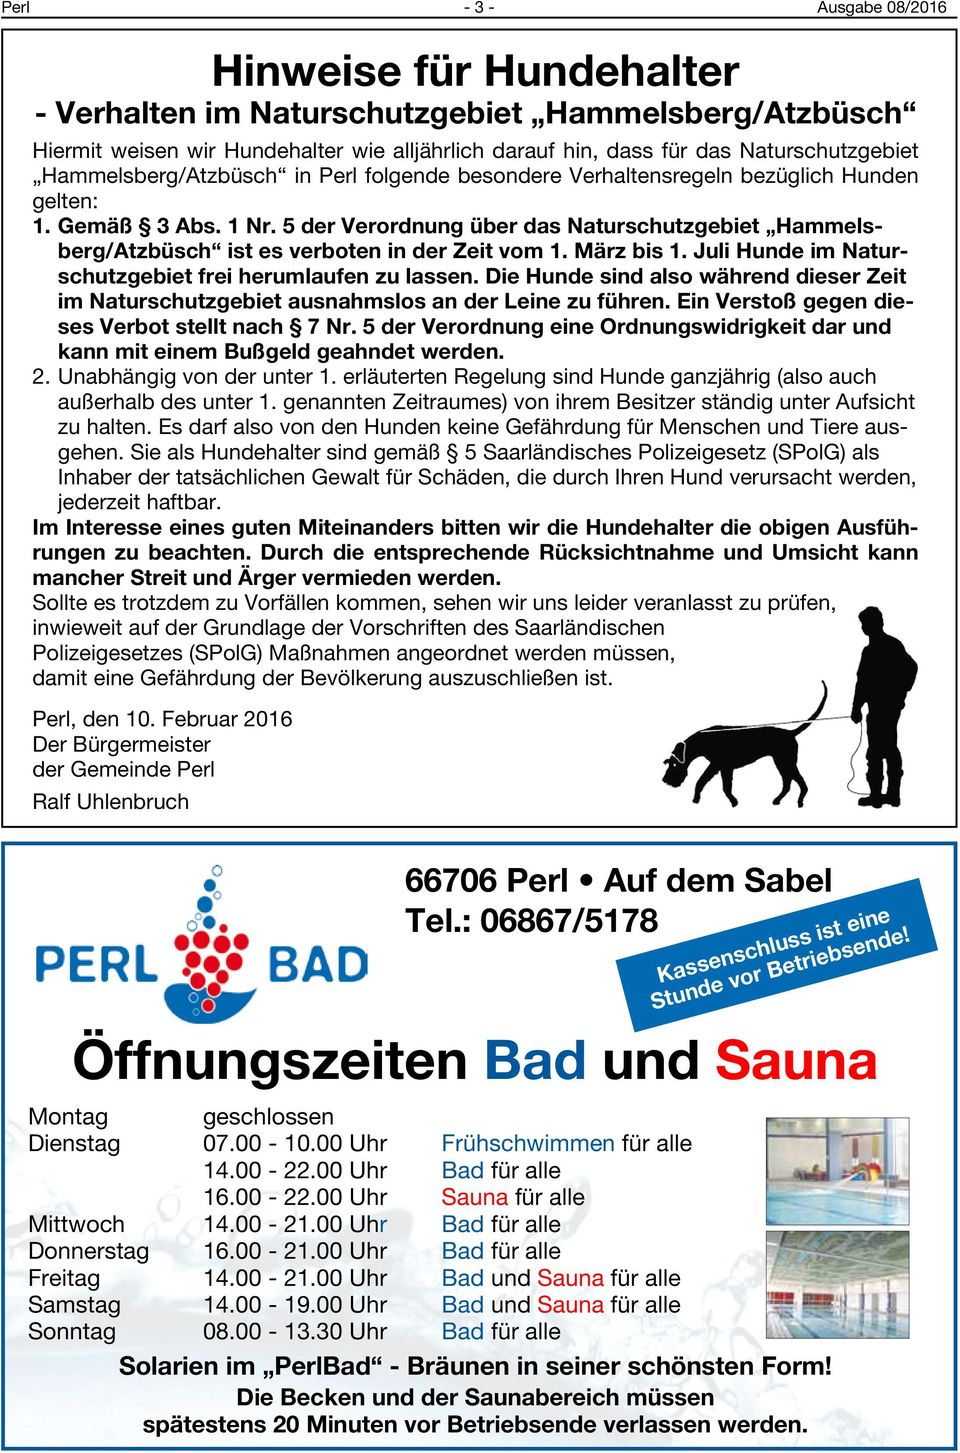 5 der Verordnung über das Naturschutzgebiet Hammelsberg/Atzbüsch ist es verboten in der Zeit vom 1. März bis 1. Juli Hunde im Naturschutzgebiet frei herumlaufen zu lassen.